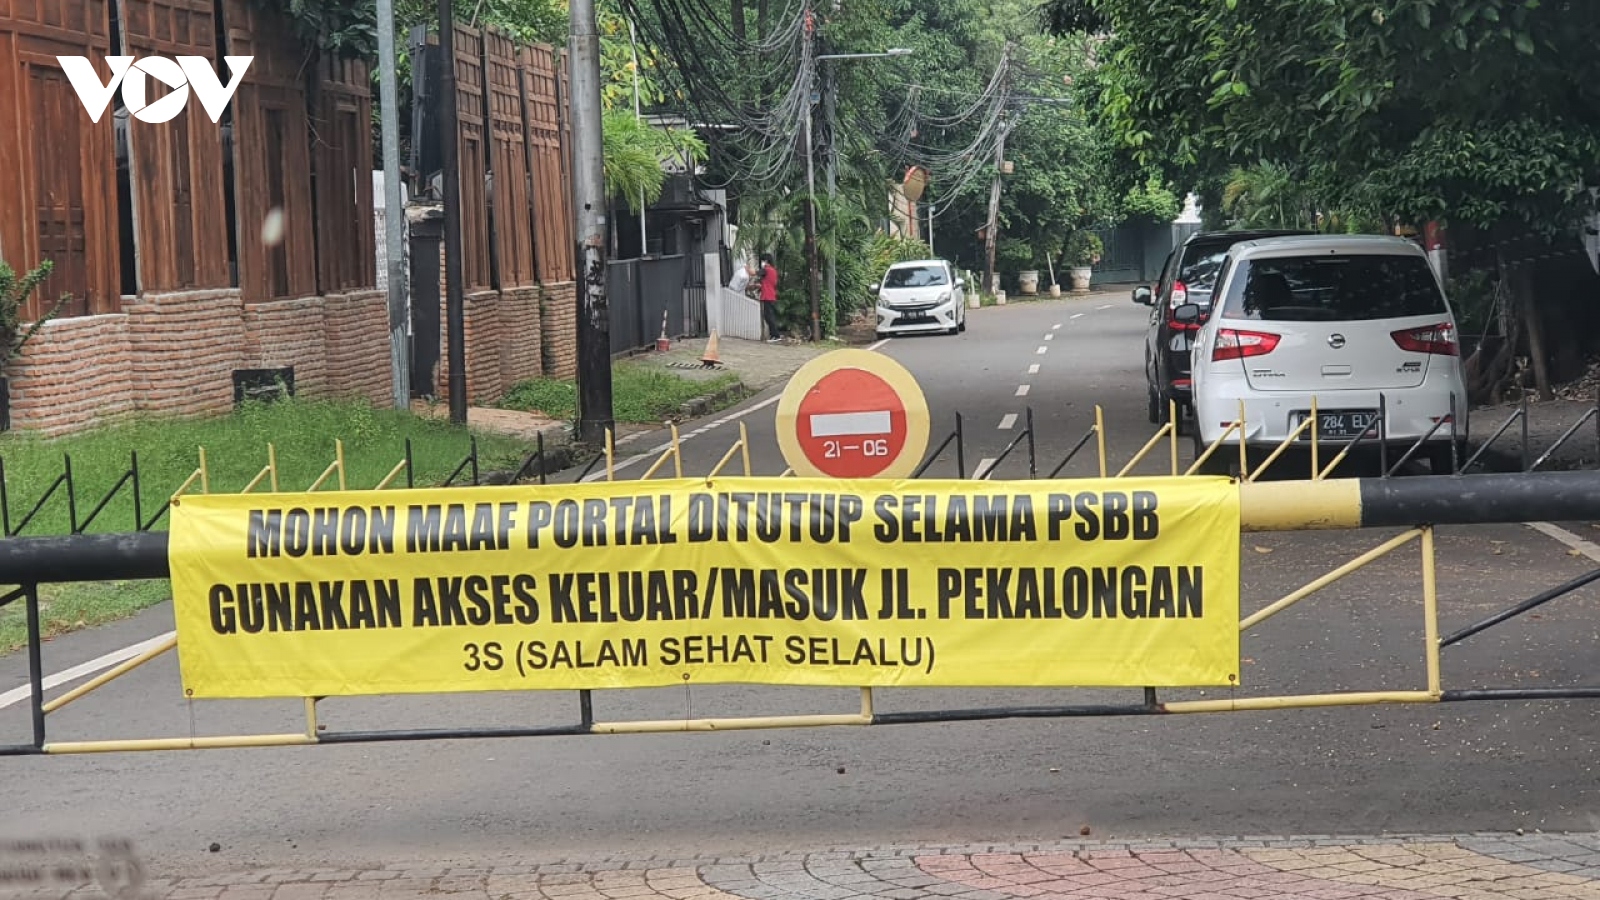 Tái giãn cách xã hội, Jakarta (Indonesia) đặt trong tình trạng khẩn cấp do Covid-19